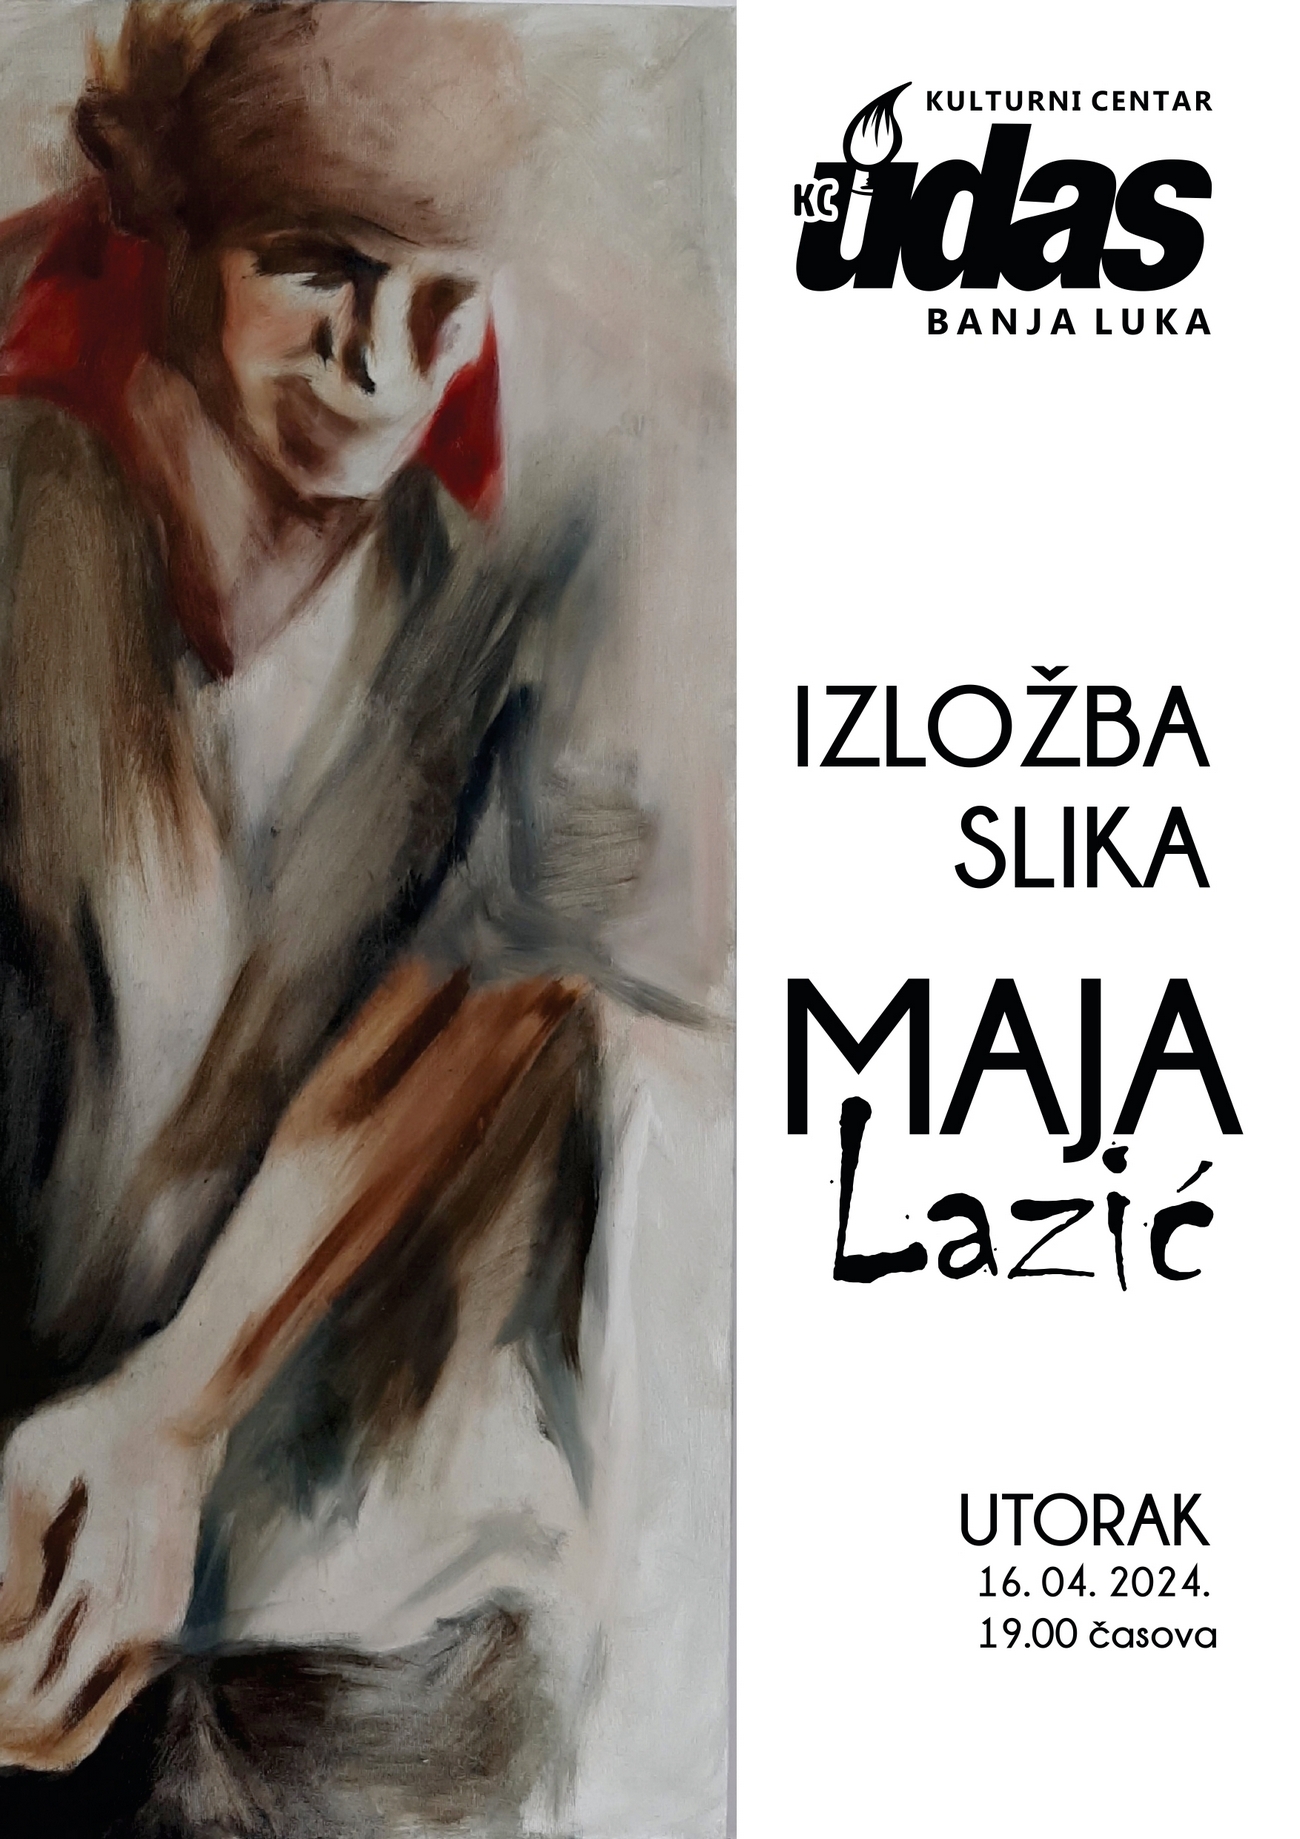 Samostalna izložba slika Maje Lazić  u Кulturnom centru UDAS